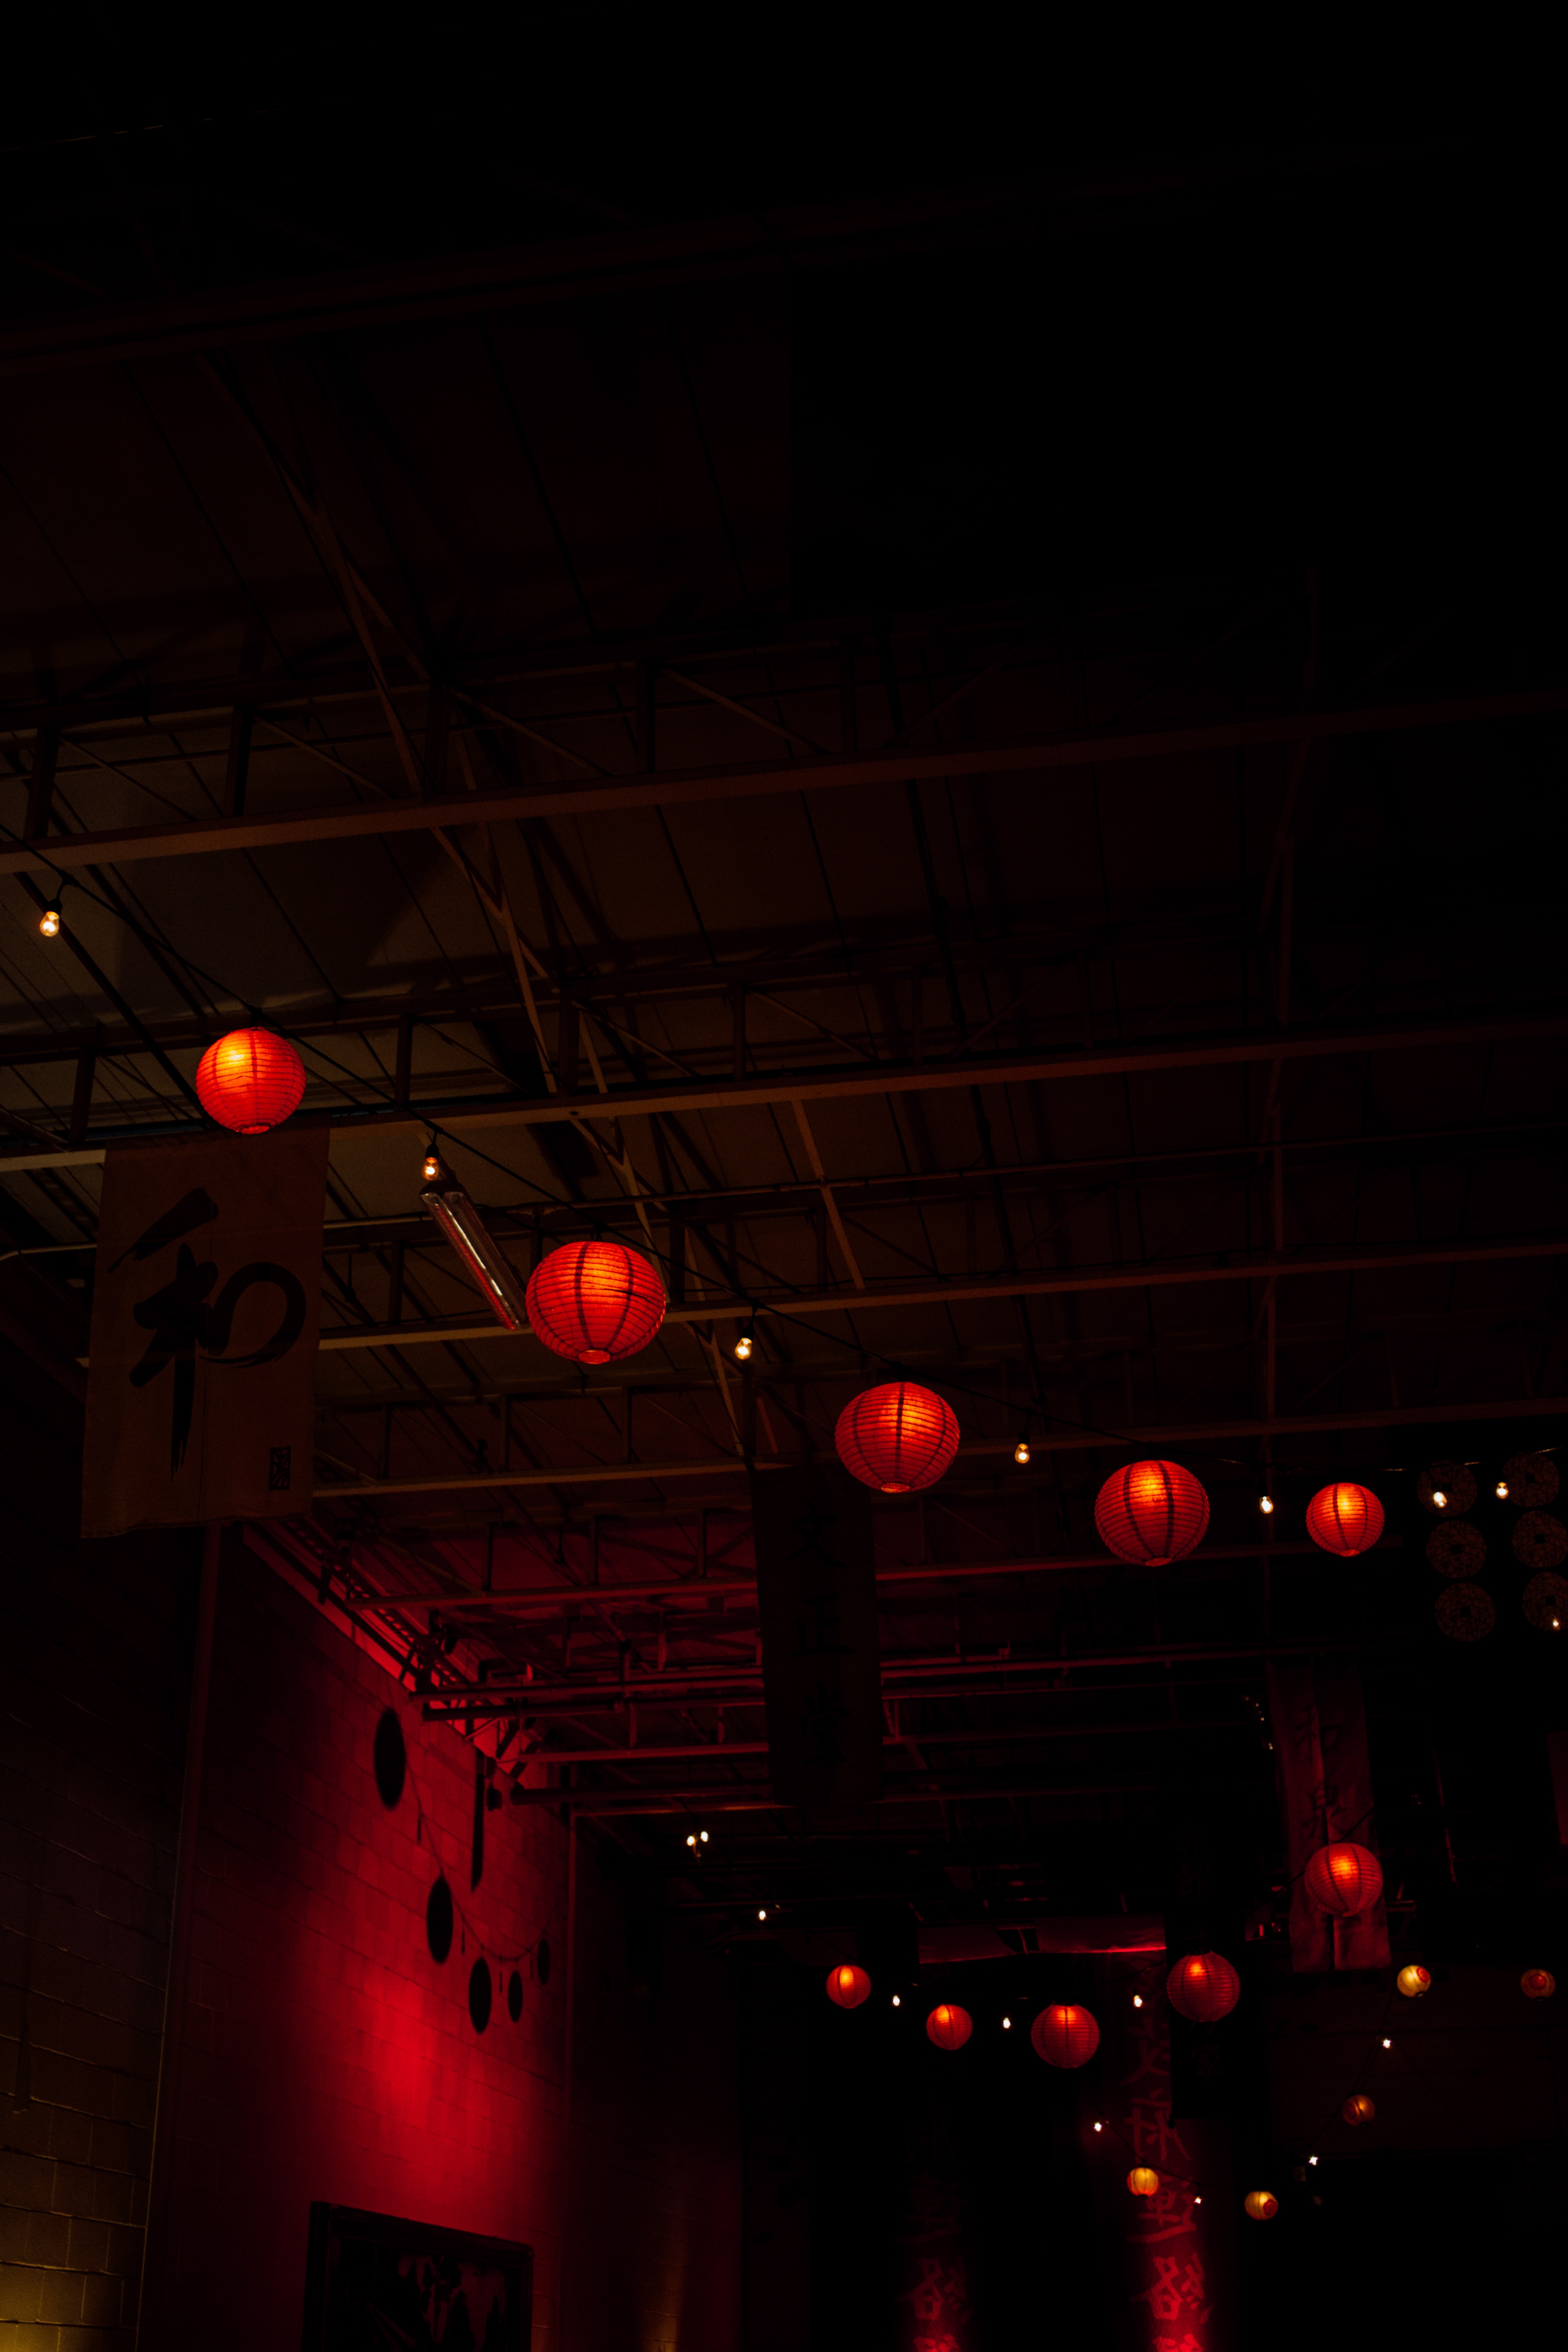 dark, lights, lanterns, darkness, chinese lanterns